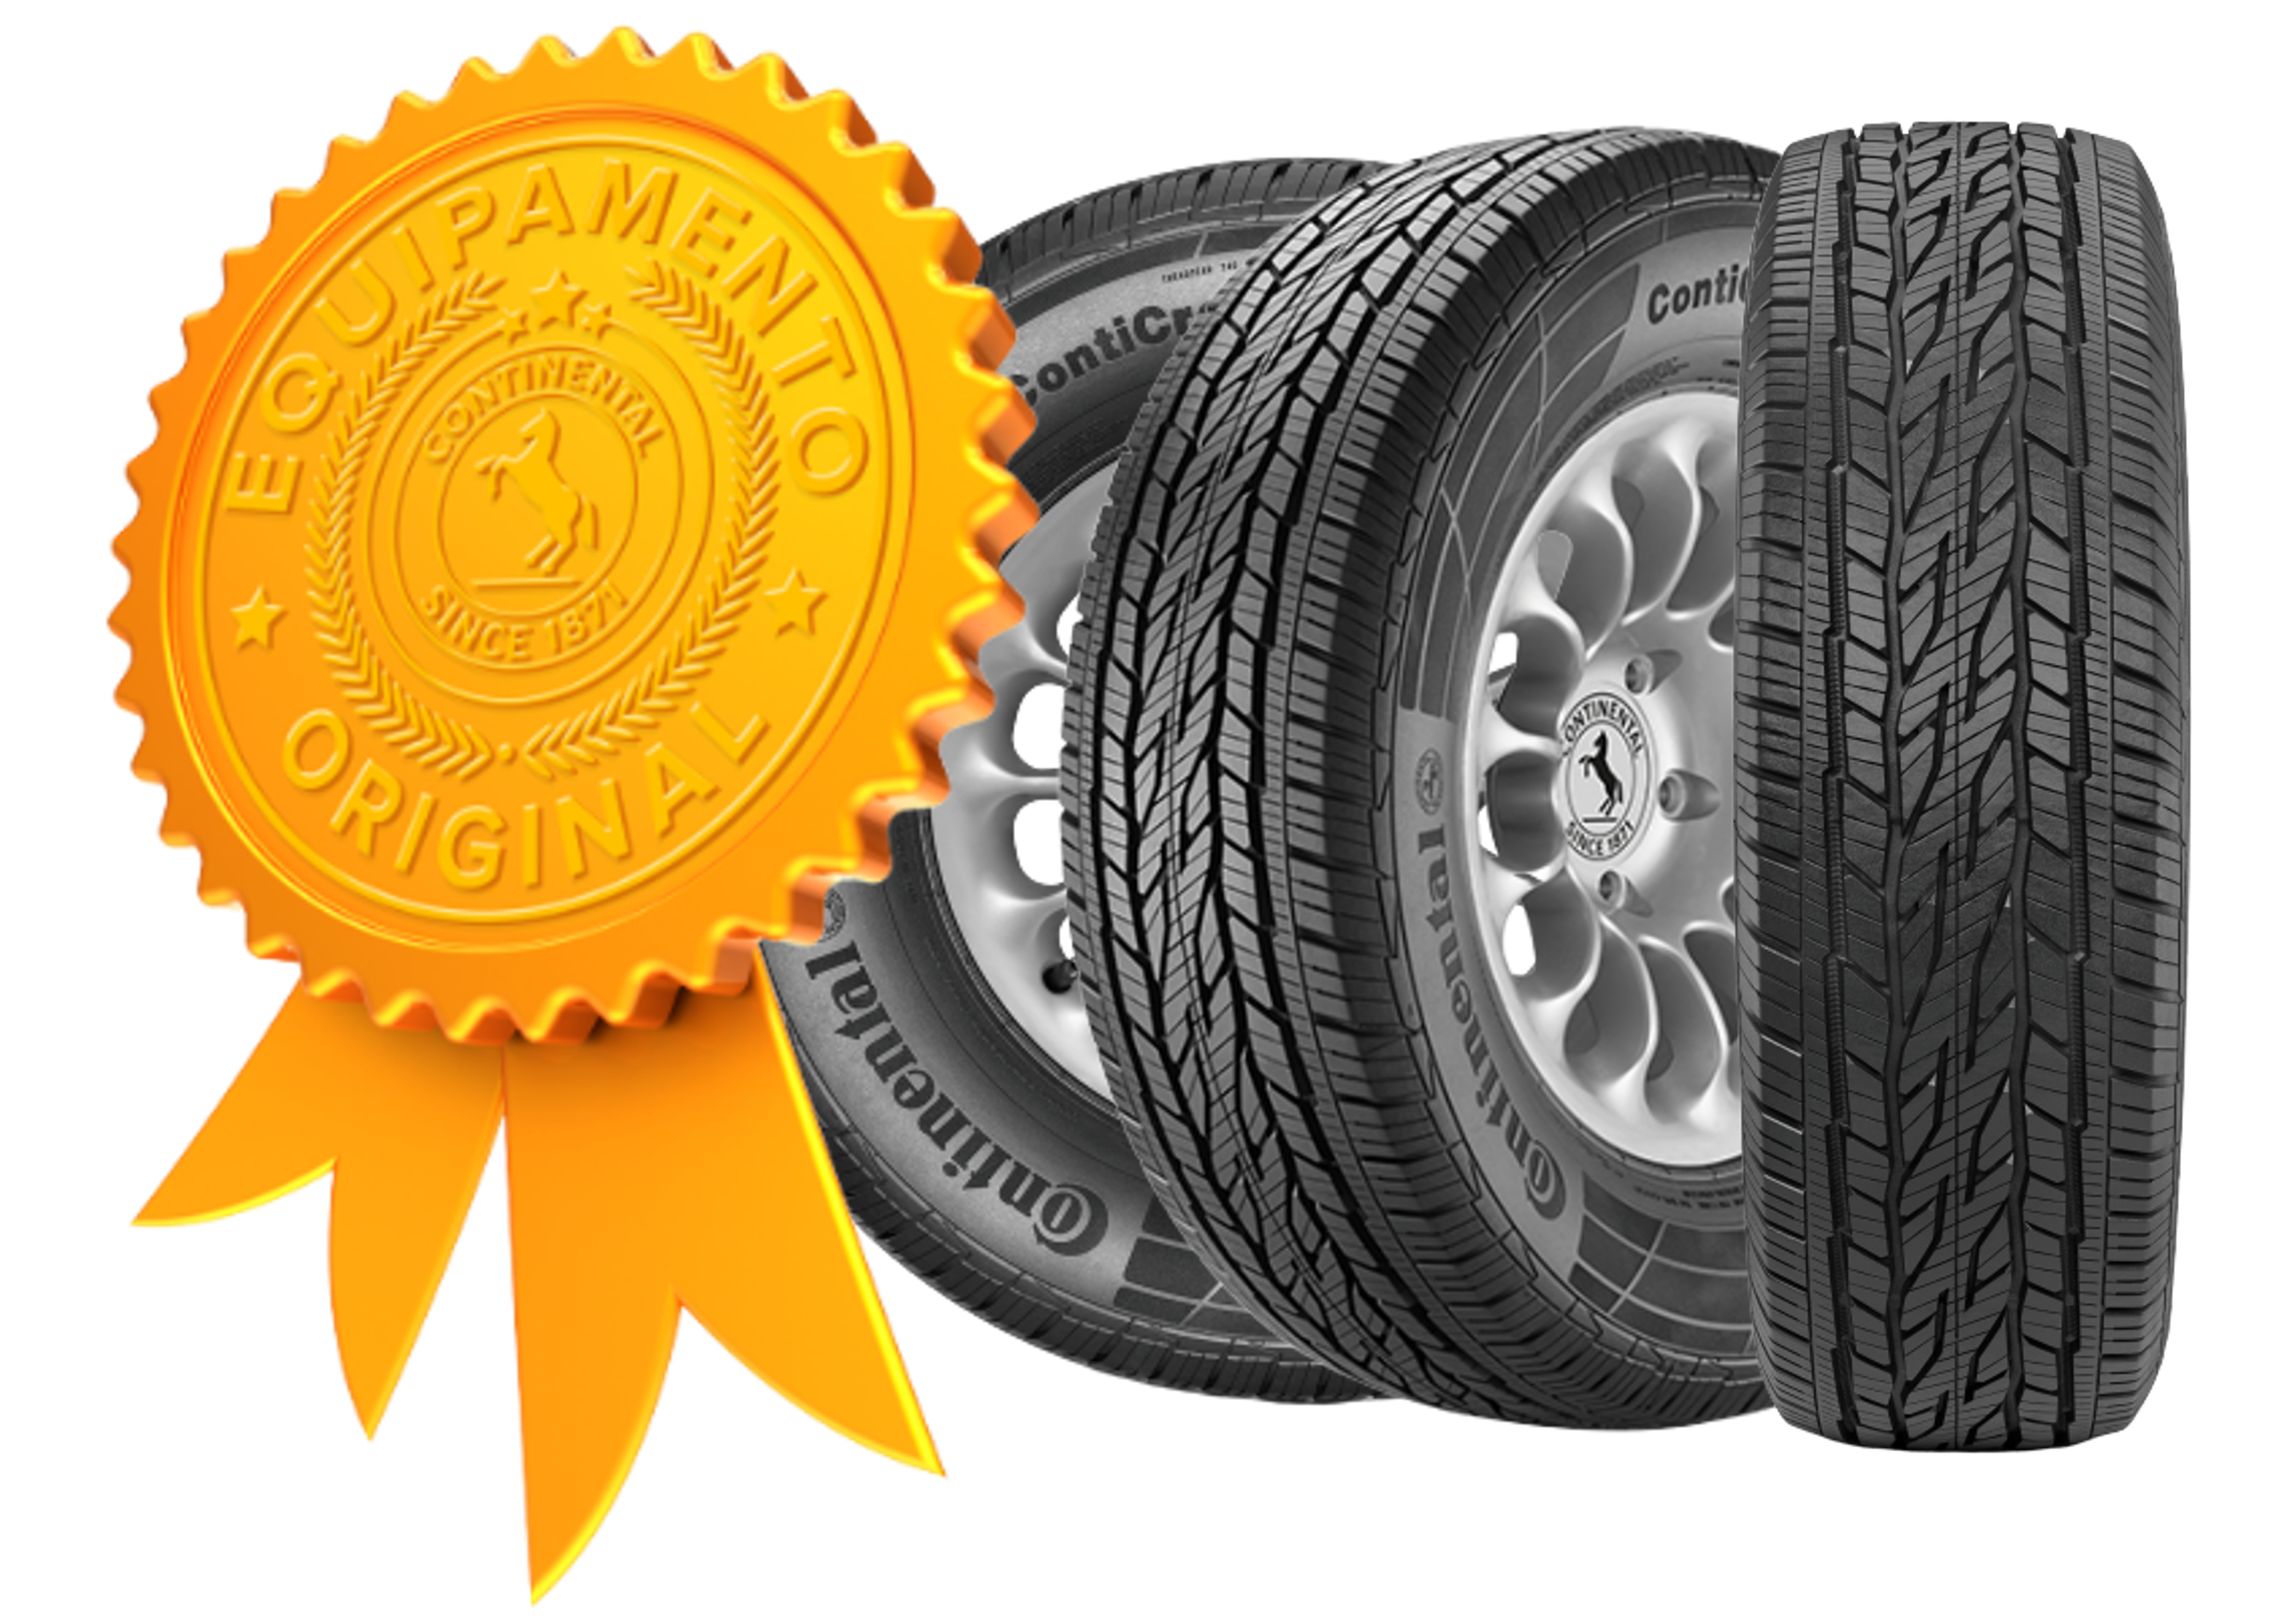 (arte com selo de qualidade de pneu original da Chevrolet e três fotos do pneu original da S10 em ângulos diferentes)